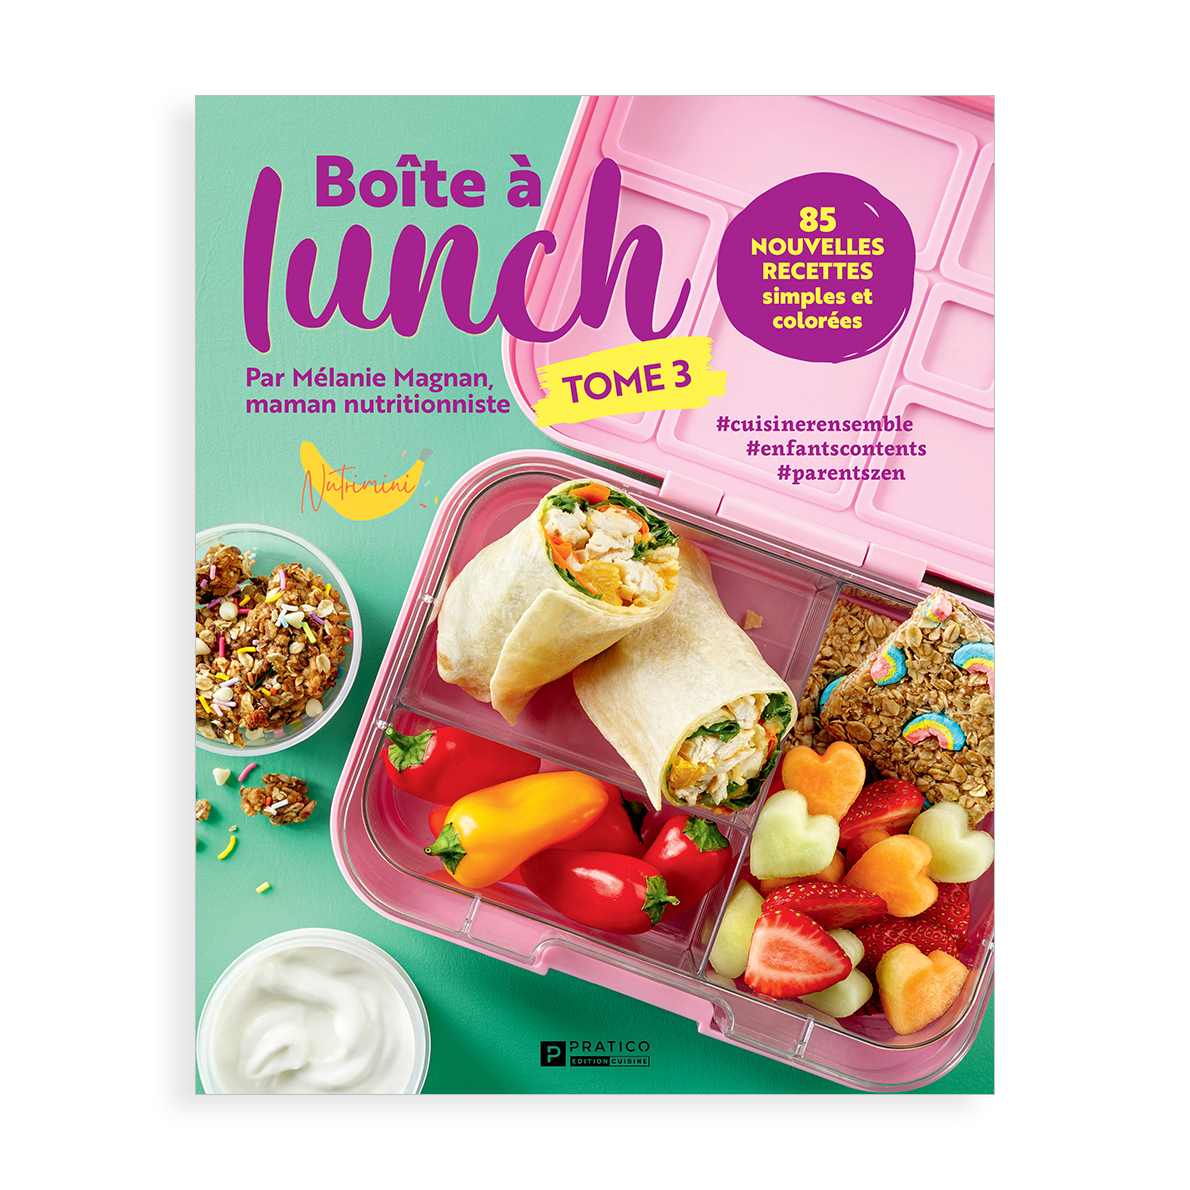 Le livre Boîte à lunch – tome 3: Encore plus de délices pour des repas sains et originaux!